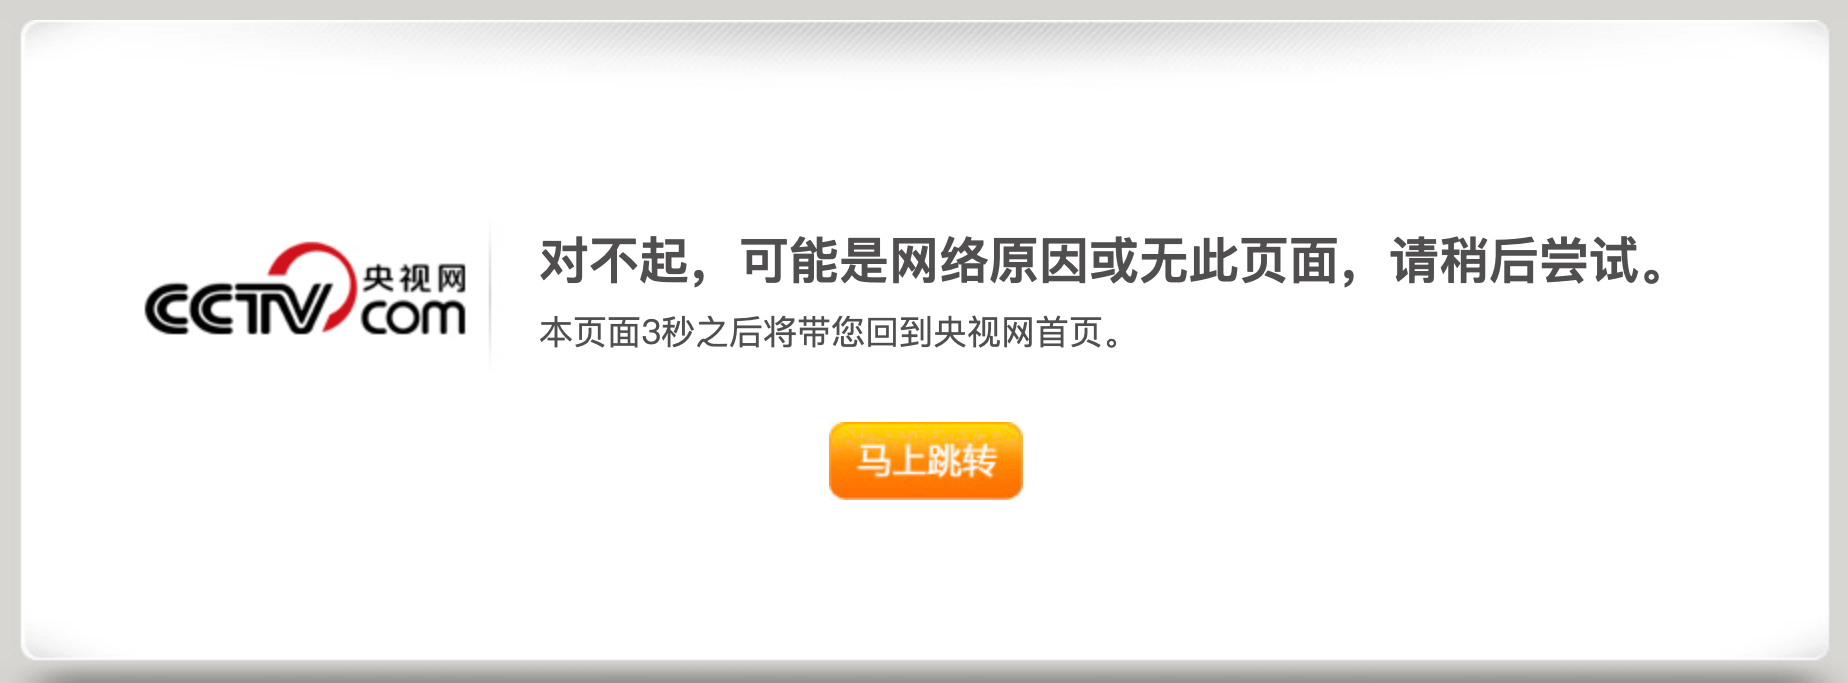 Что будет с криптовалютами? Уведомление об удалённой странице на сайте телевидения Китая. Фото.